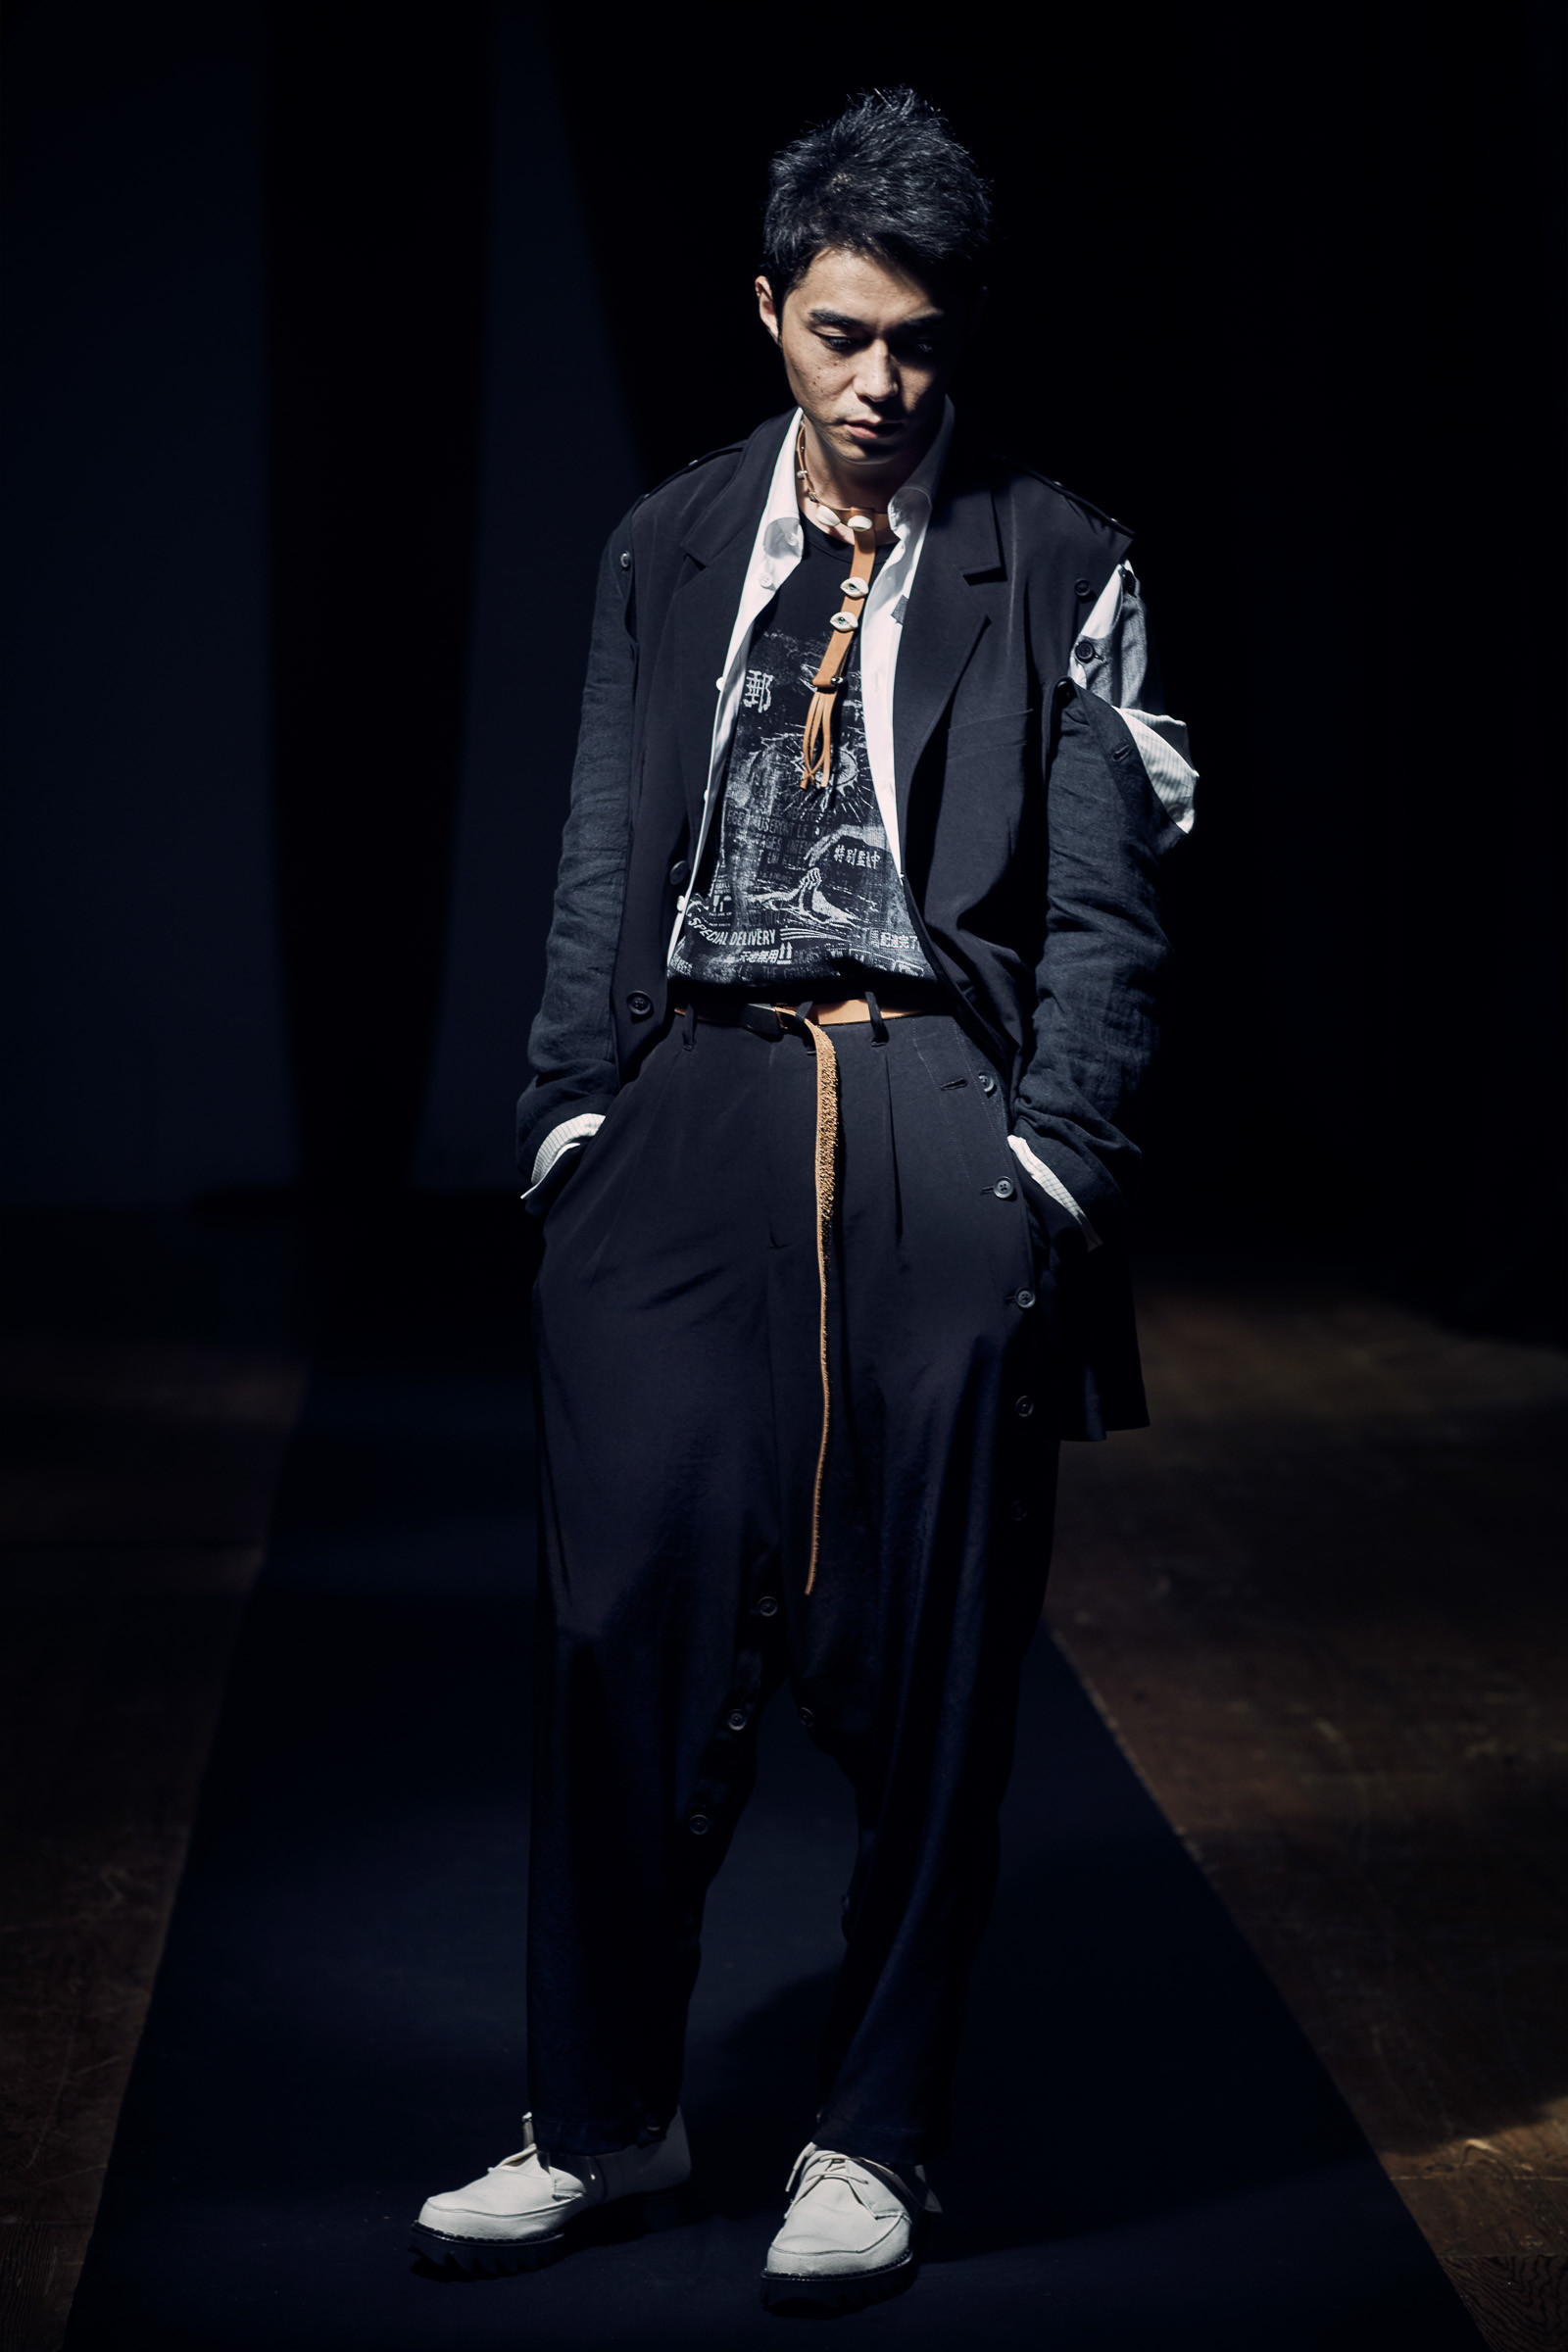 Yohji Yamamoto HOMME 2021年春夏コレクション | パリ | 画像46枚 - FASHIONSNAP.COM